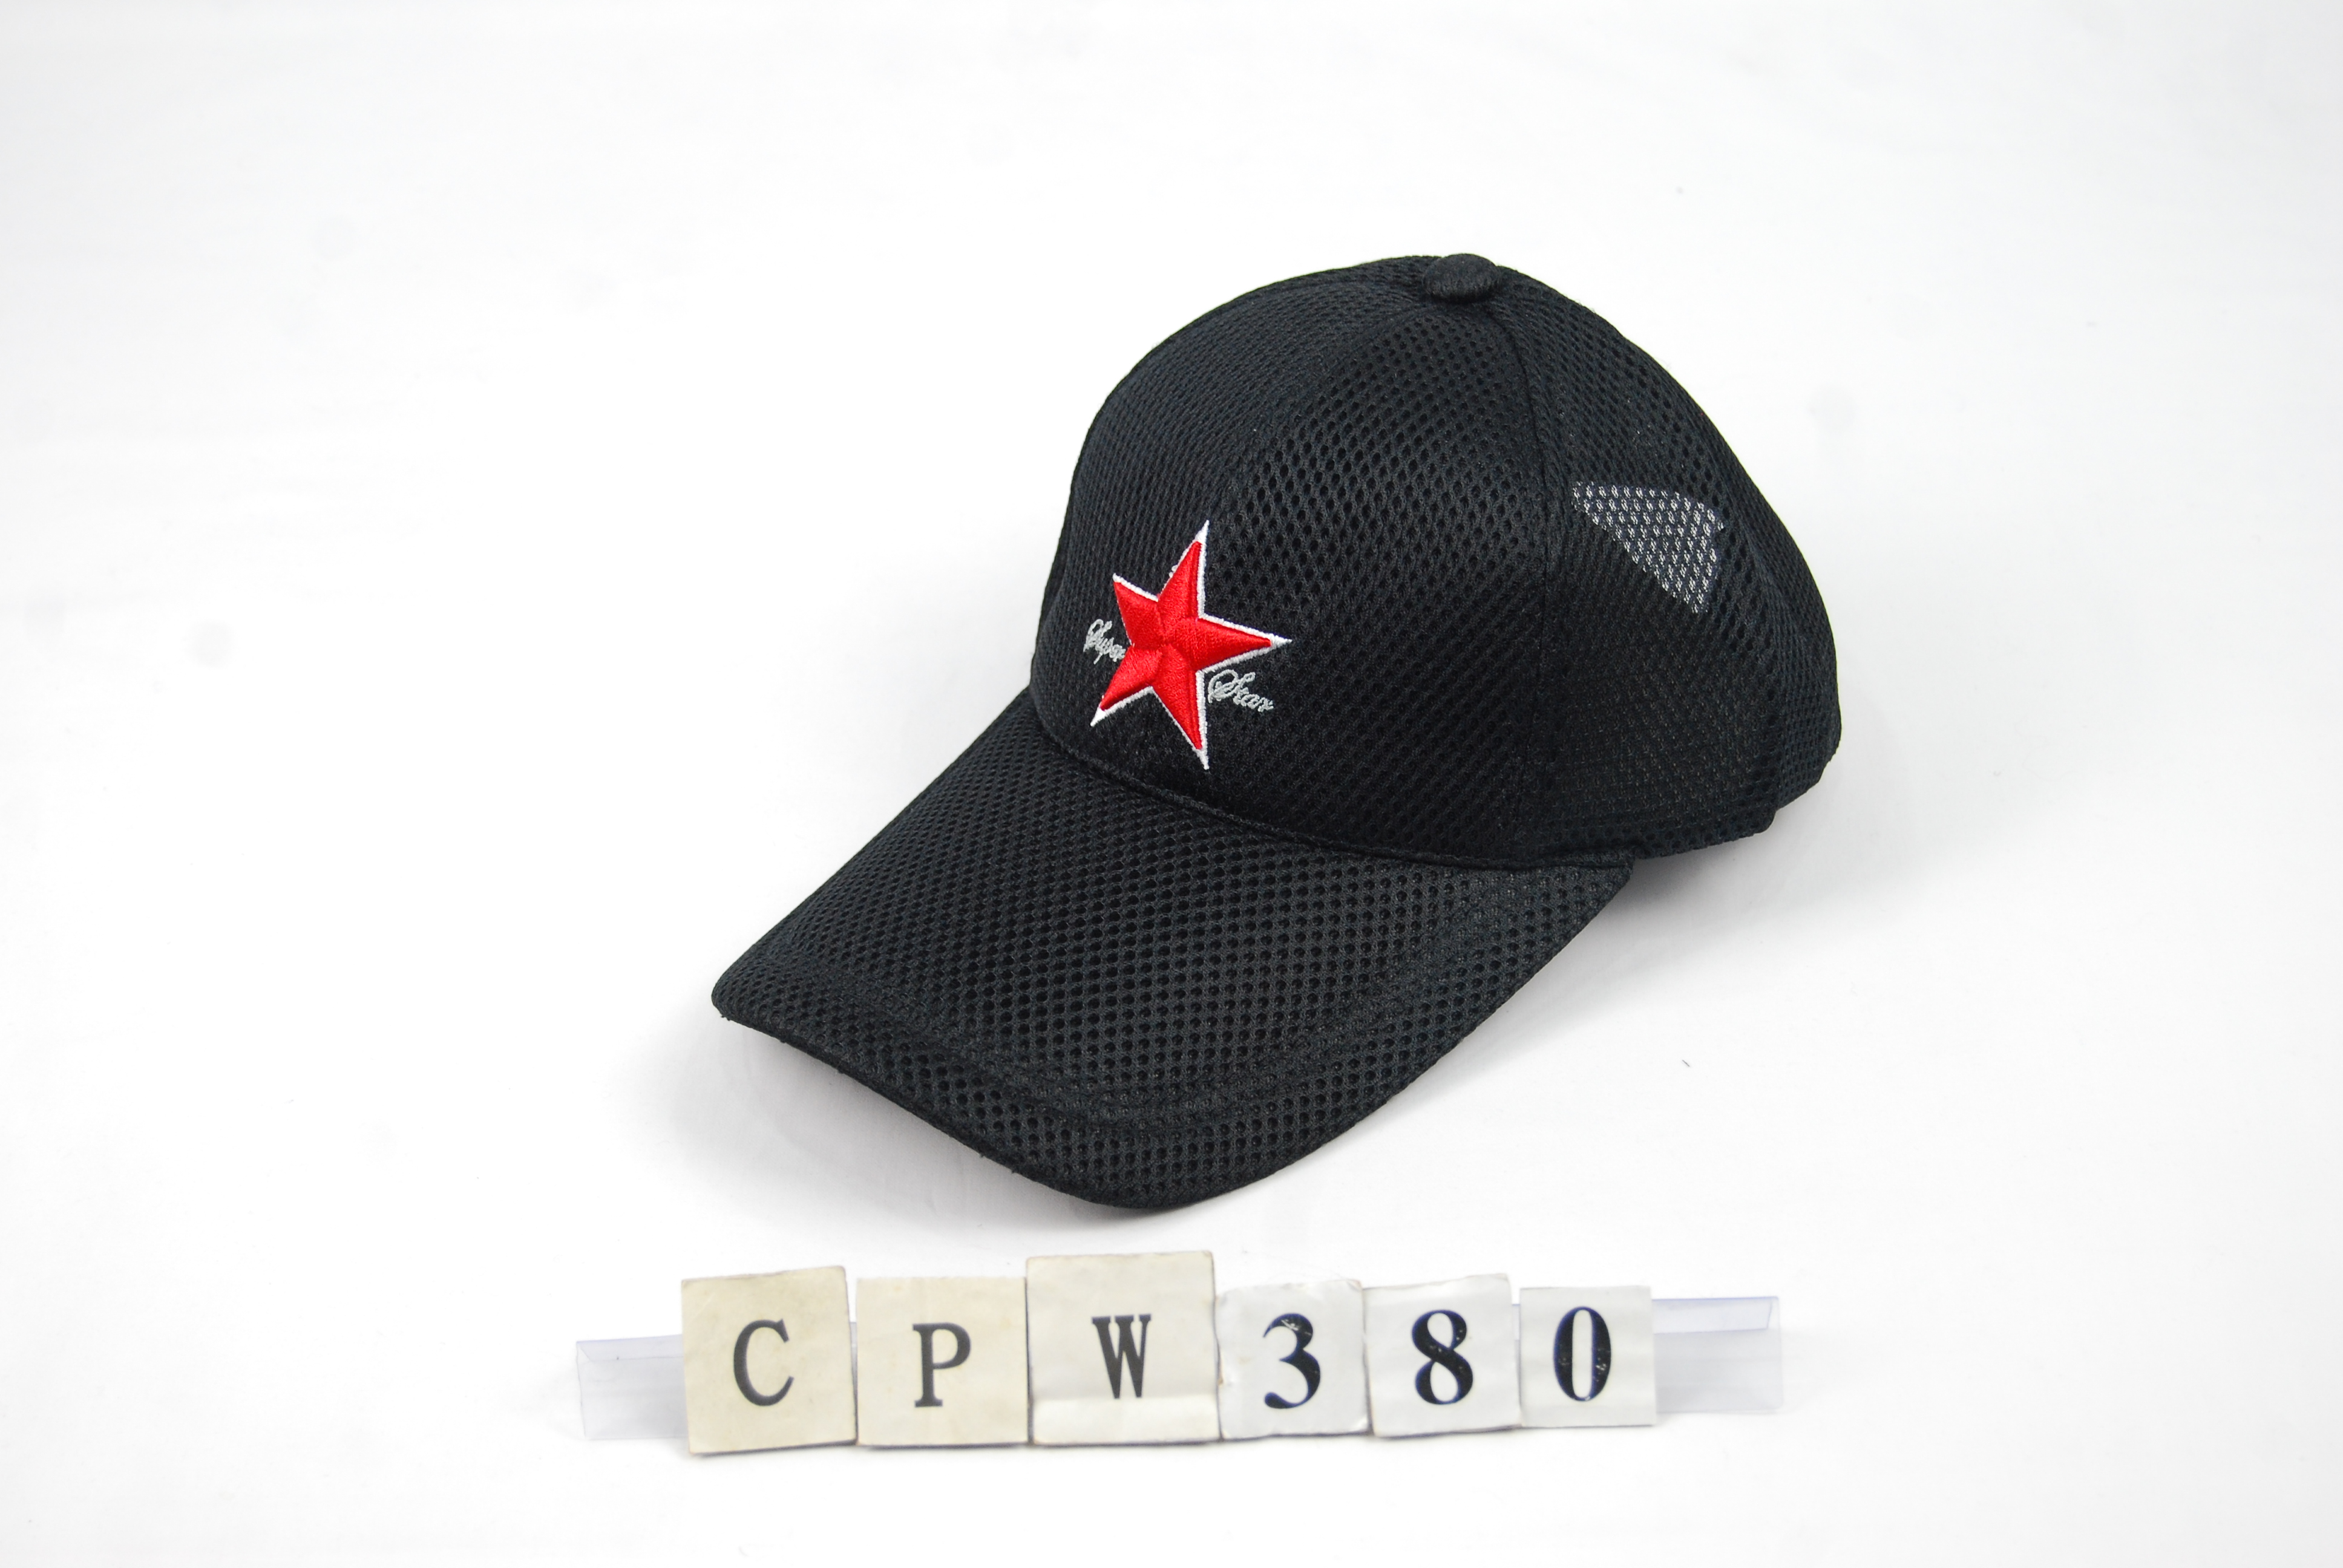 CPW380 素色網帽 一般長眉 中央大星 SUPER STAR 三星製帽